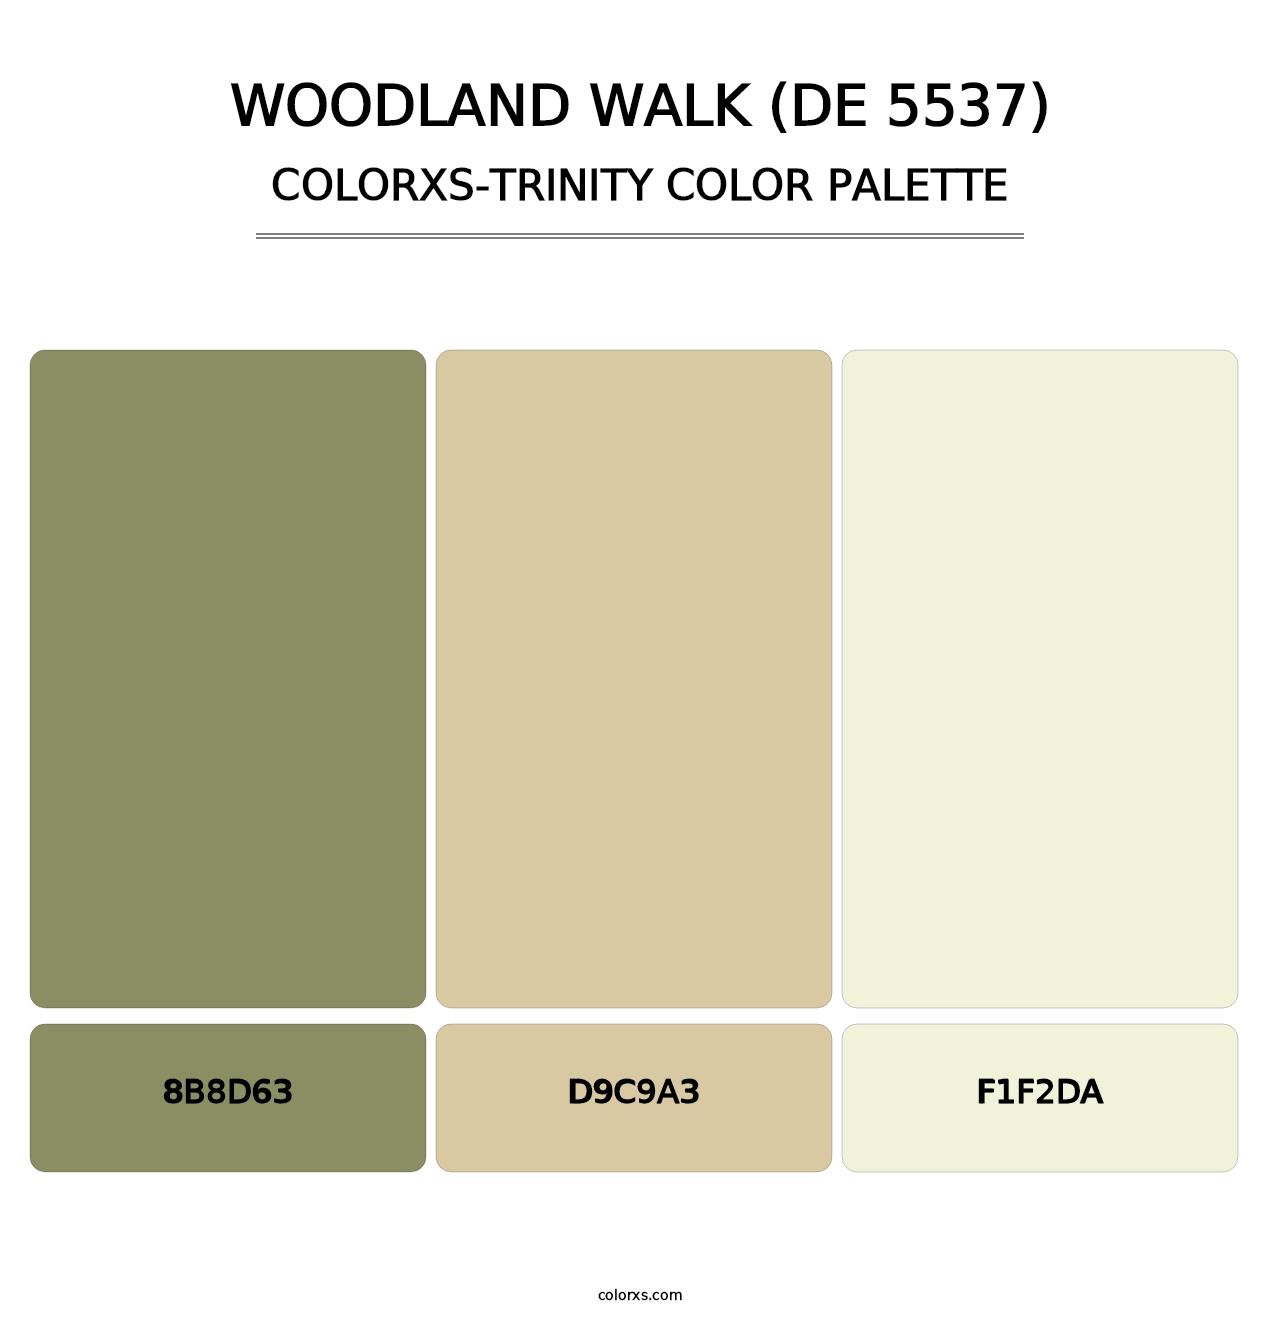 Woodland Walk (DE 5537) - Colorxs Trinity Palette